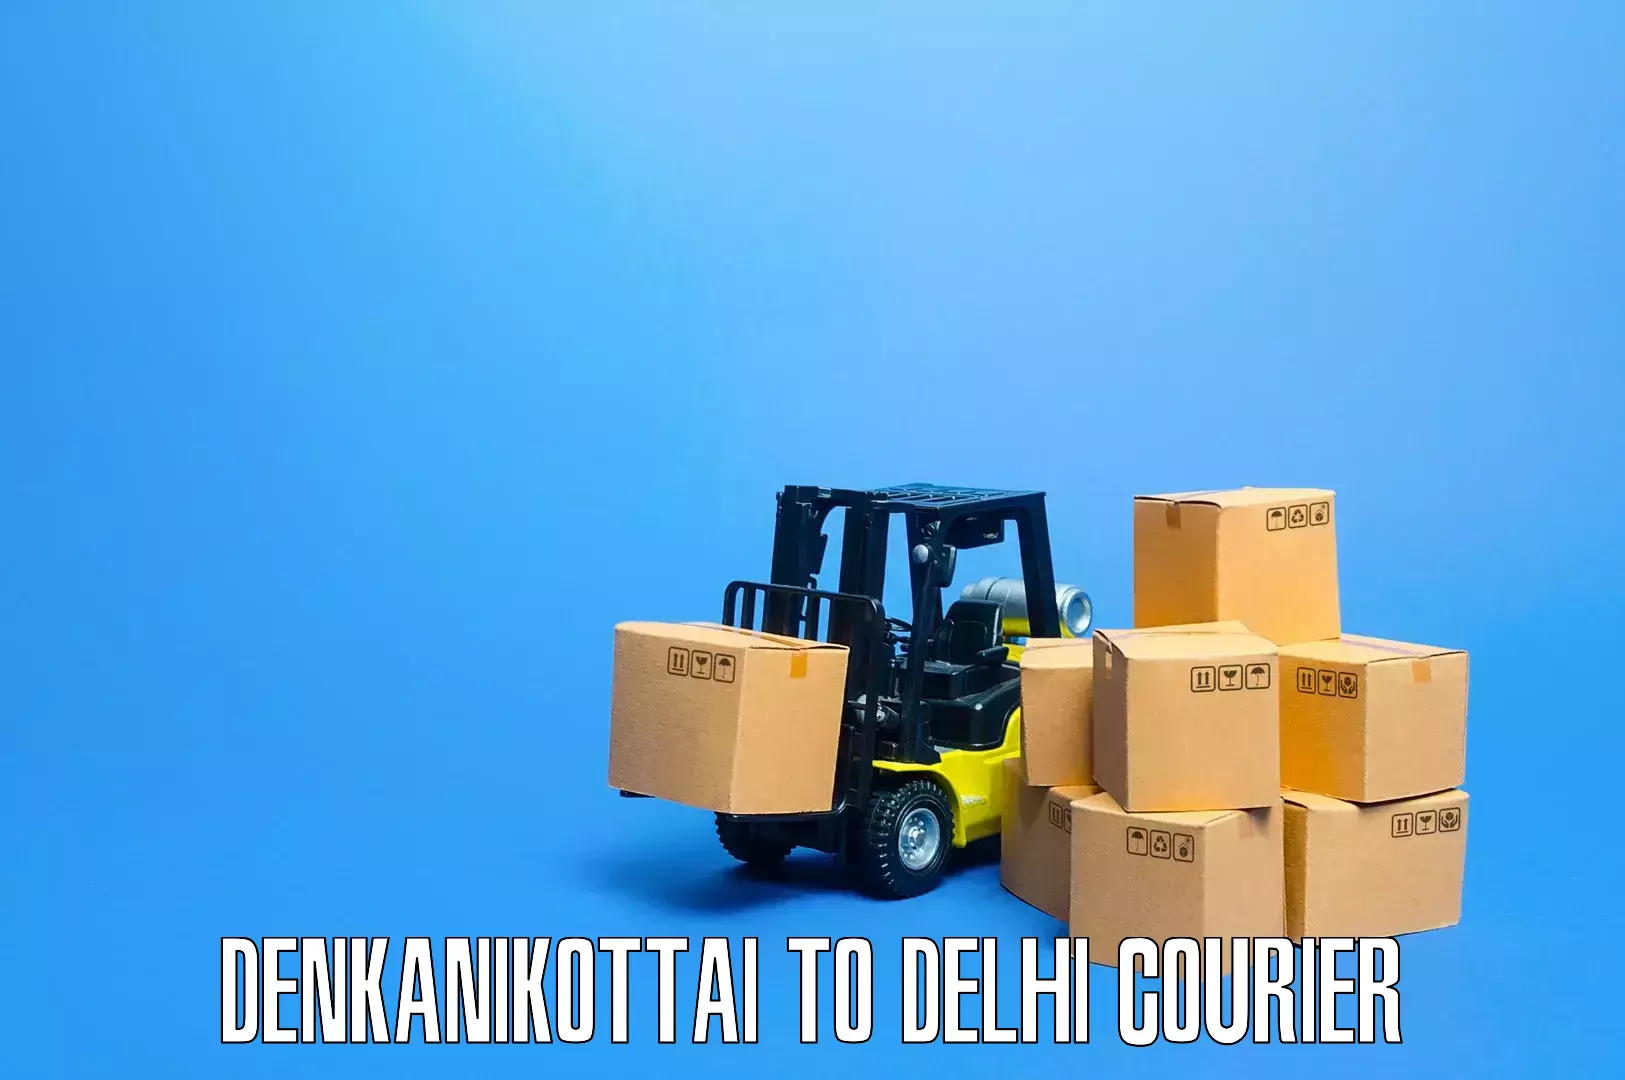 Local home movers Denkanikottai to Jawaharlal Nehru University New Delhi